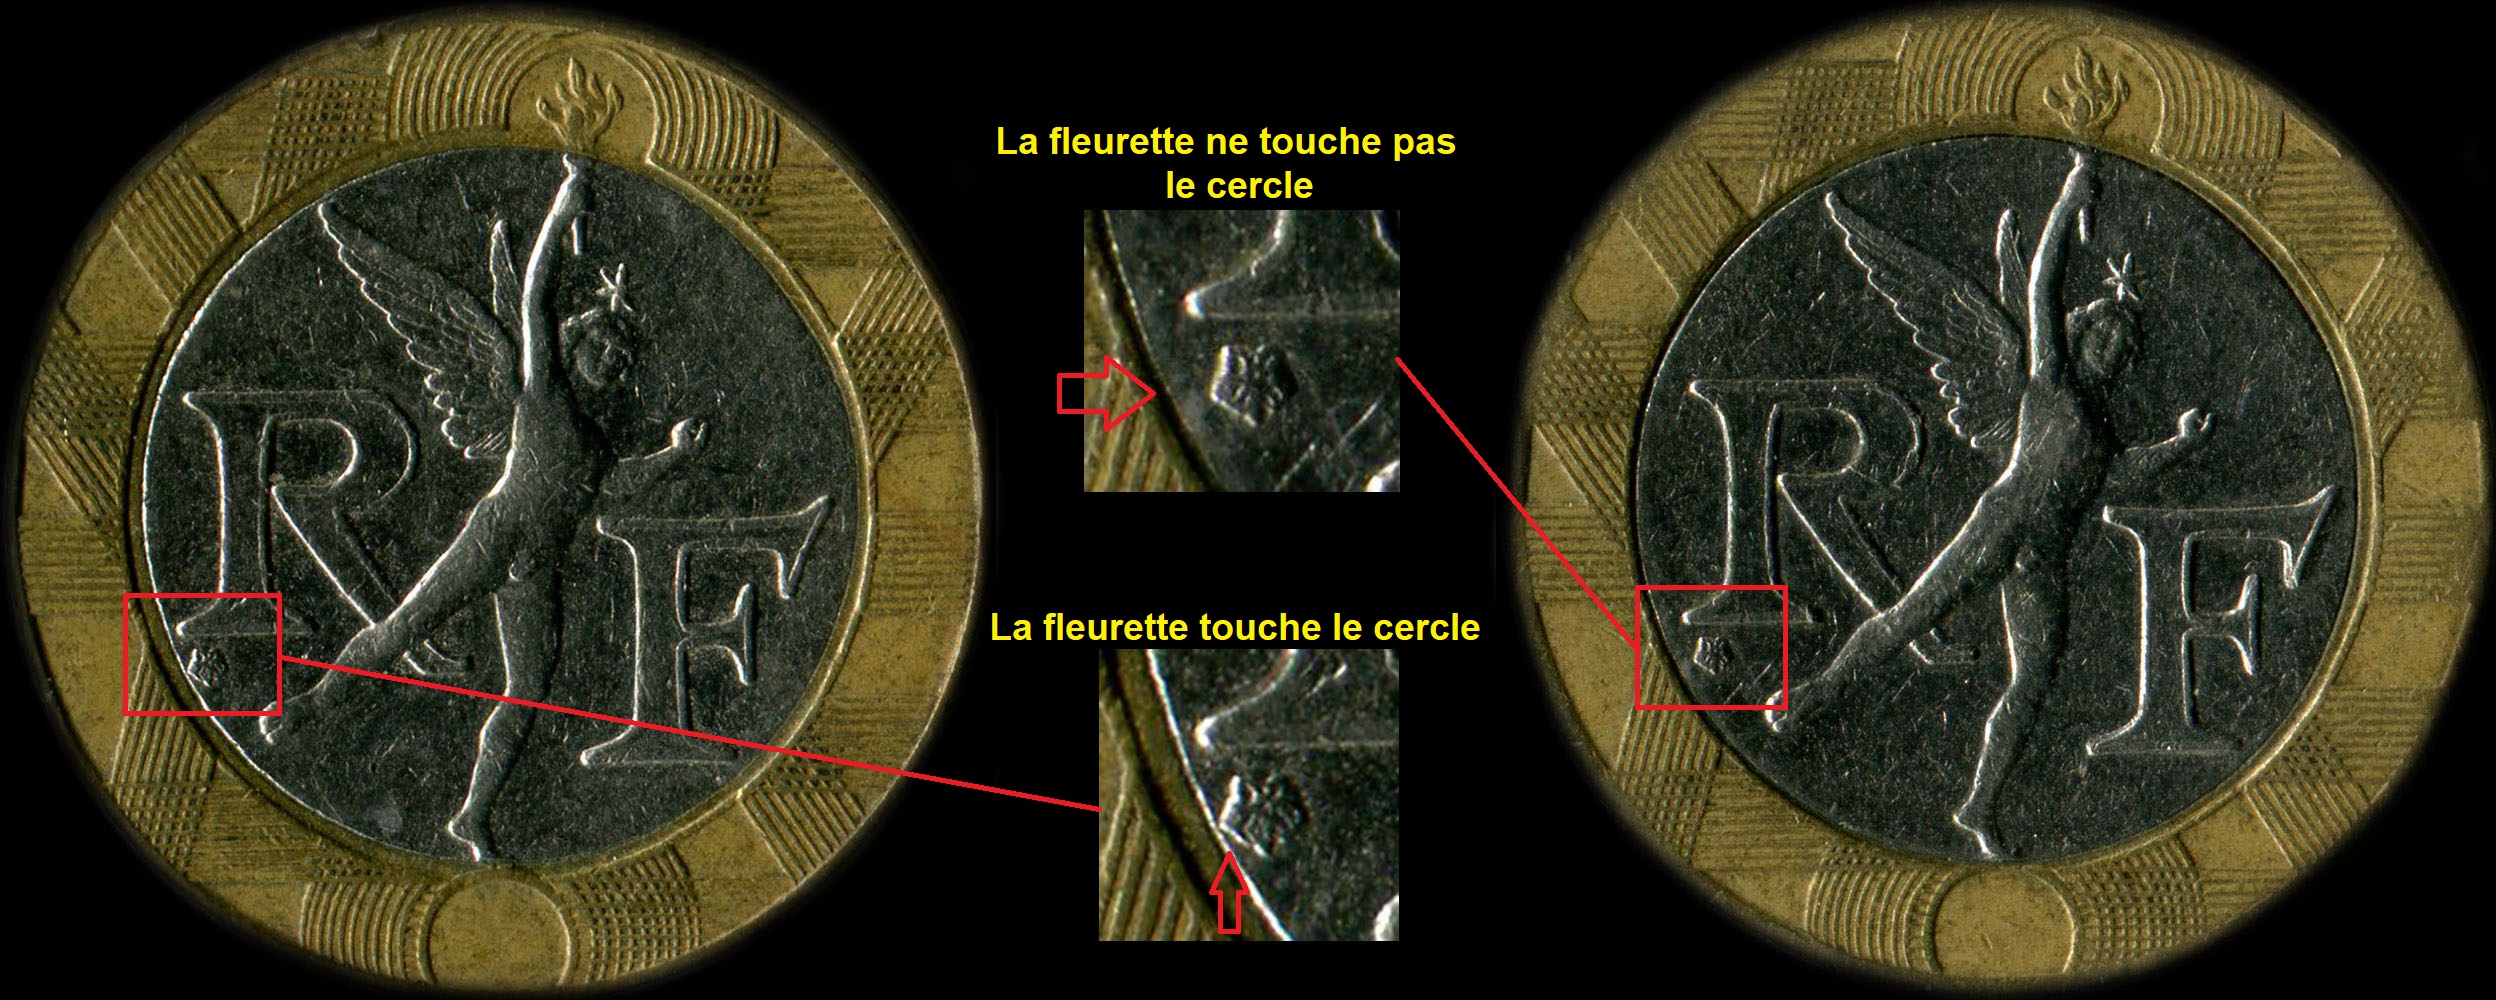 Variante fleurette de Pessac touche ou pas le cercle sur 10 francs Gnie 1991